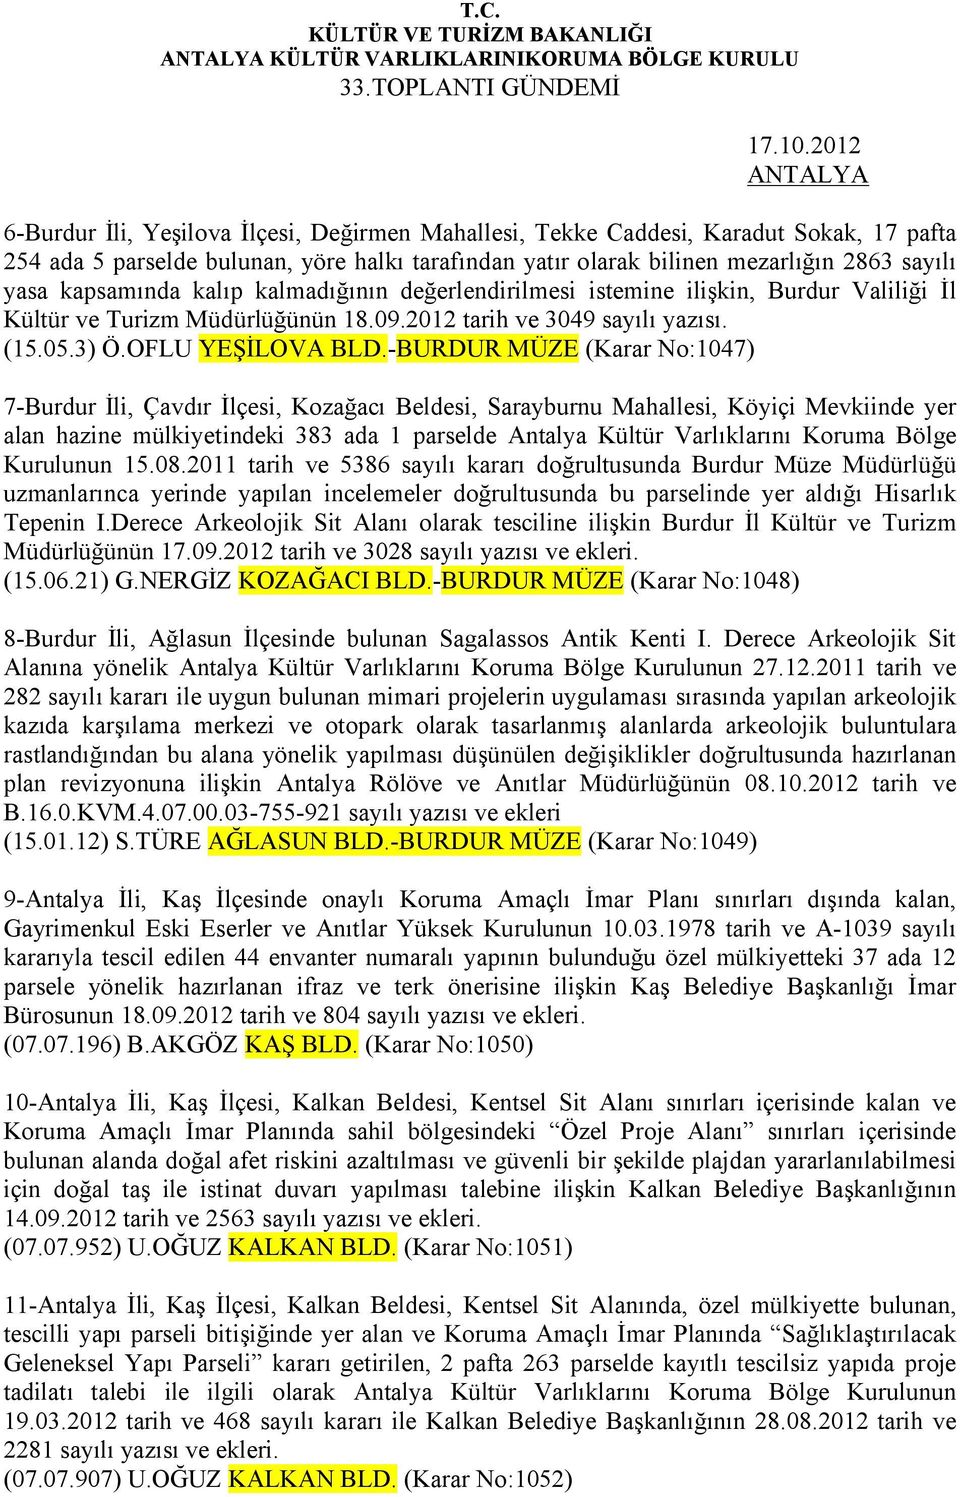 kapsamında kalıp kalmadığının değerlendirilmesi istemine ilişkin, Burdur Valiliği İl Kültür ve Turizm Müdürlüğünün 18.09.2012 tarih ve 3049 sayılı yazısı. (15.05.3) Ö.OFLU YEŞİLOVA BLD.